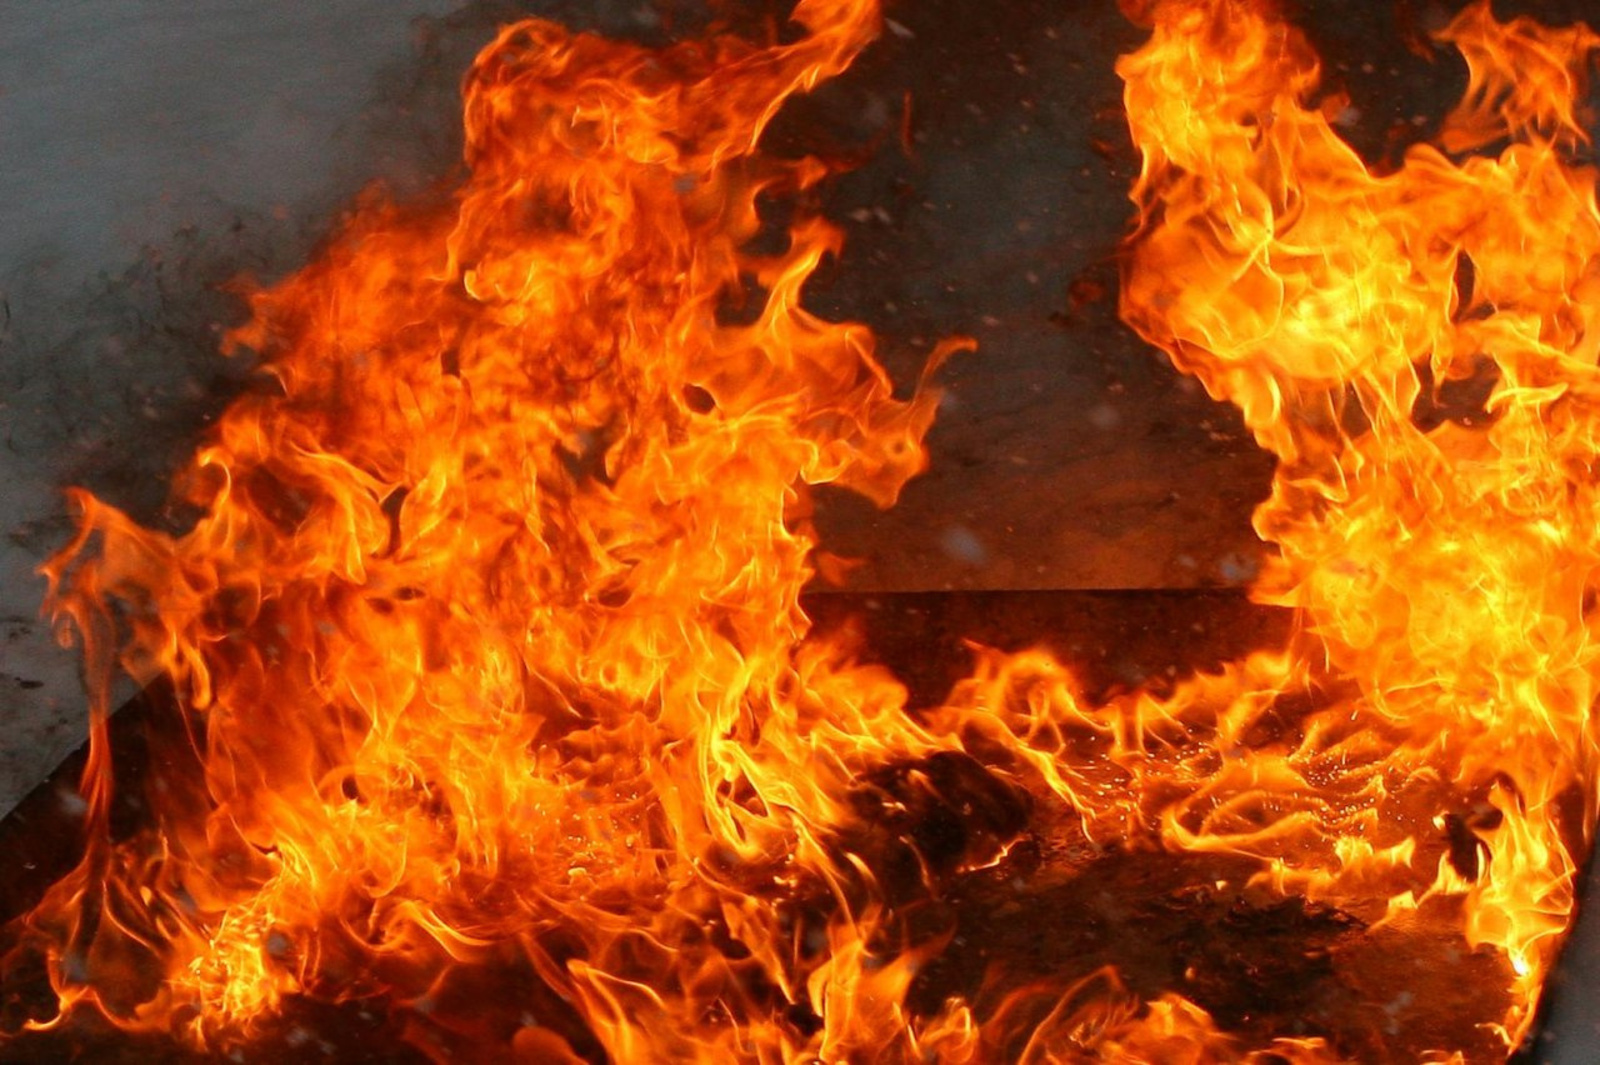 В Башкирии в подвале сгоревшего дома найден изувеченный труп женщины